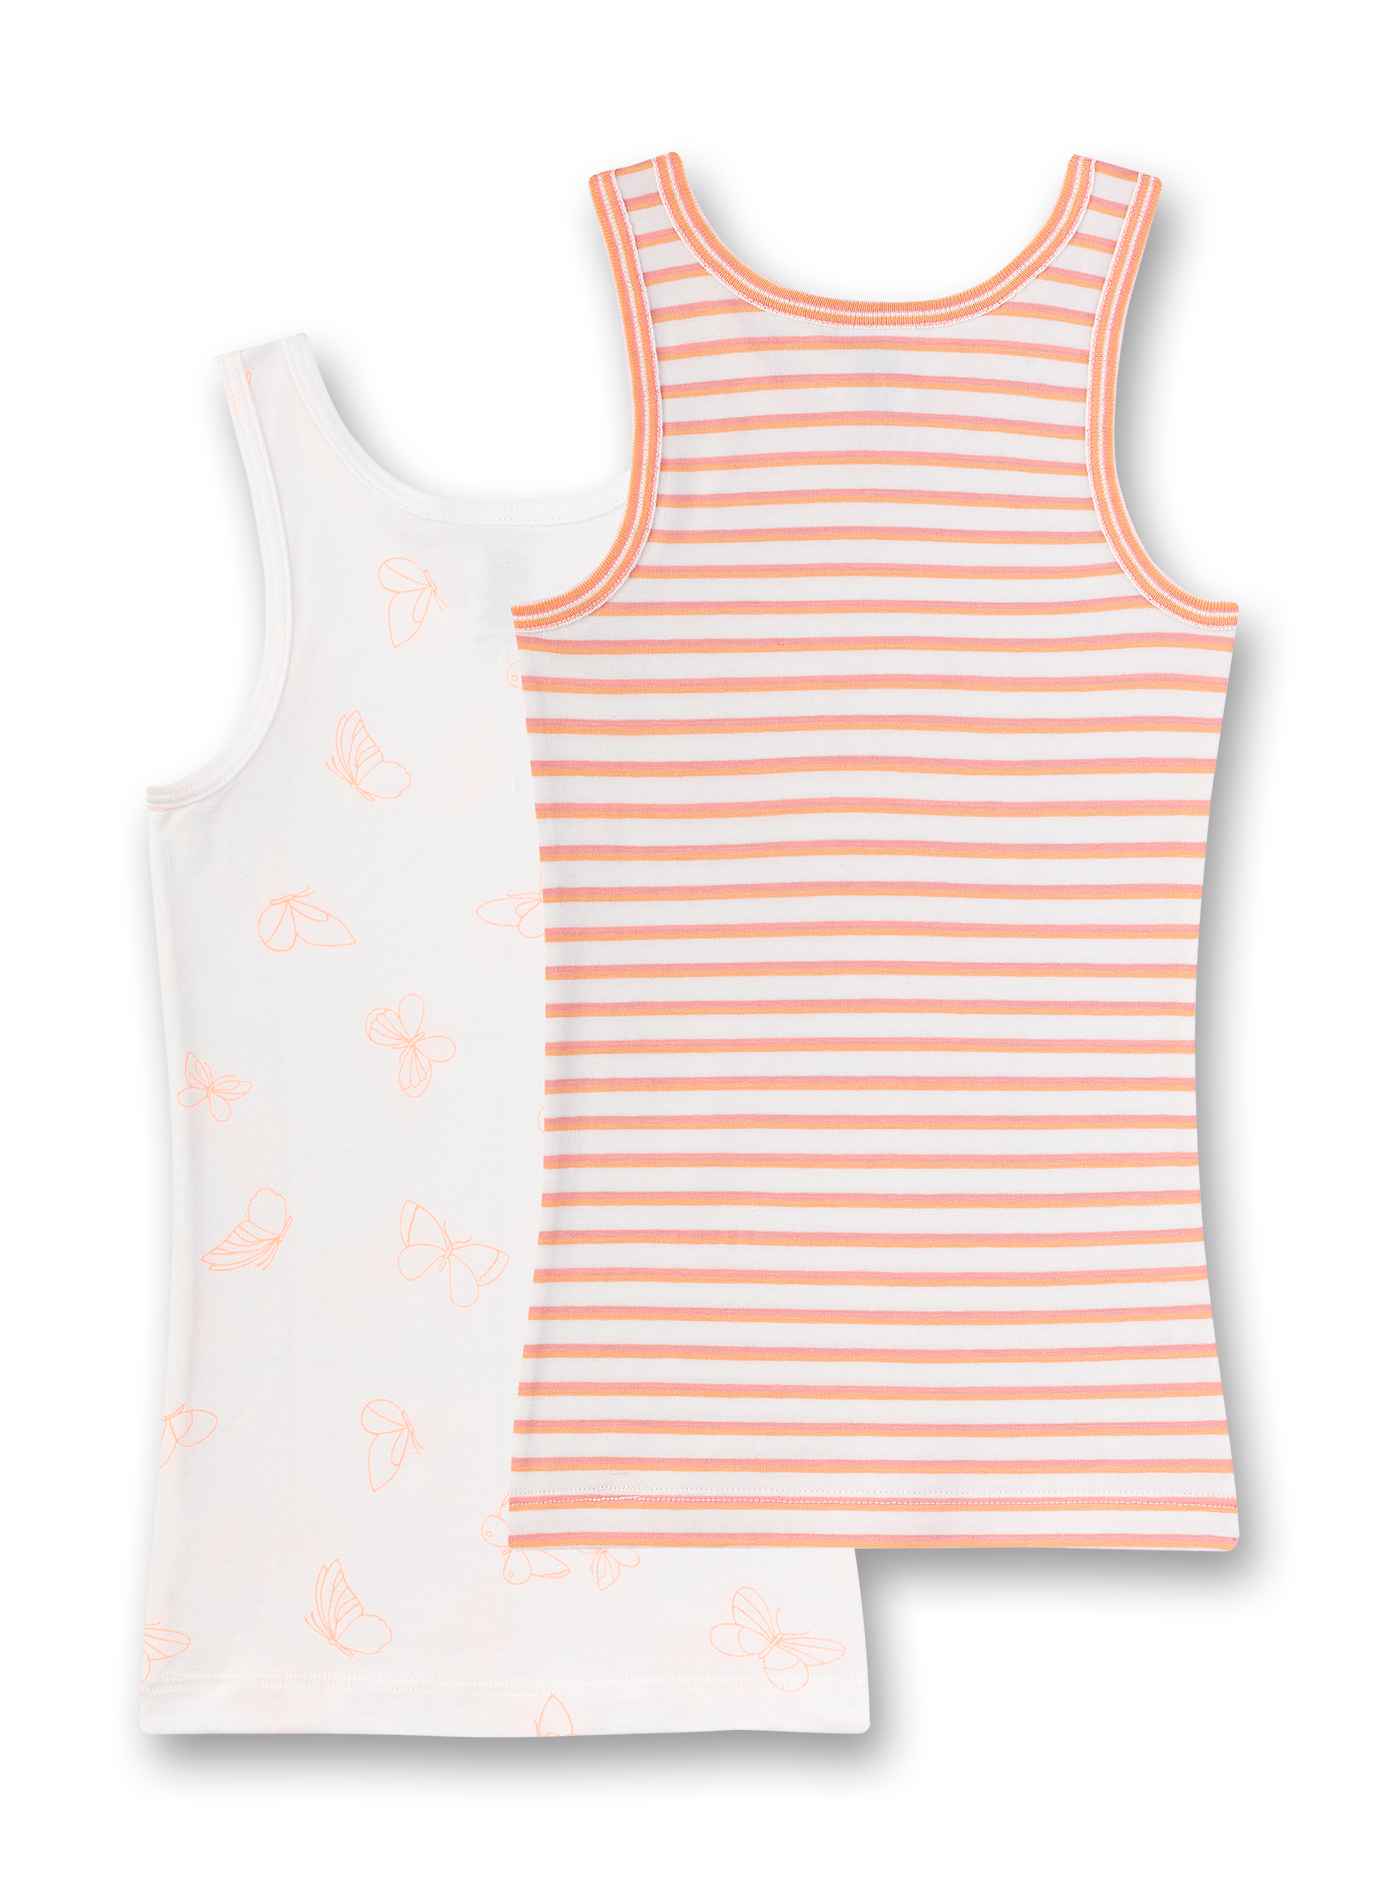 Mädchen-Unterhemd (Doppelpack) Off-White und Orange-geringelt Flamingo Breeze